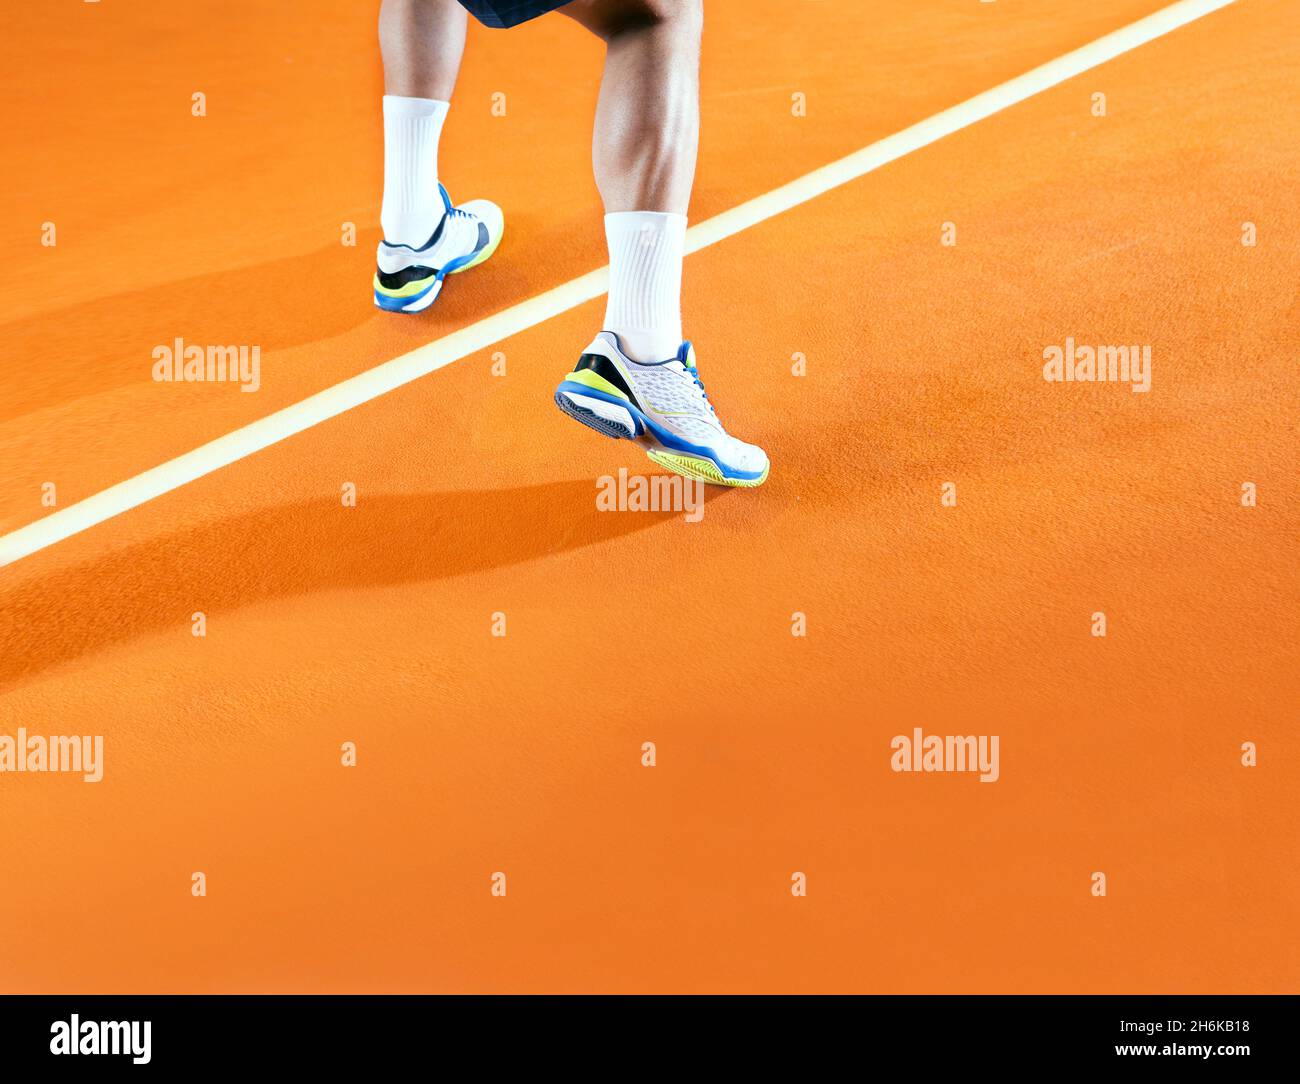 Joueur de tennis masculin en action sur le court orange Banque D'Images